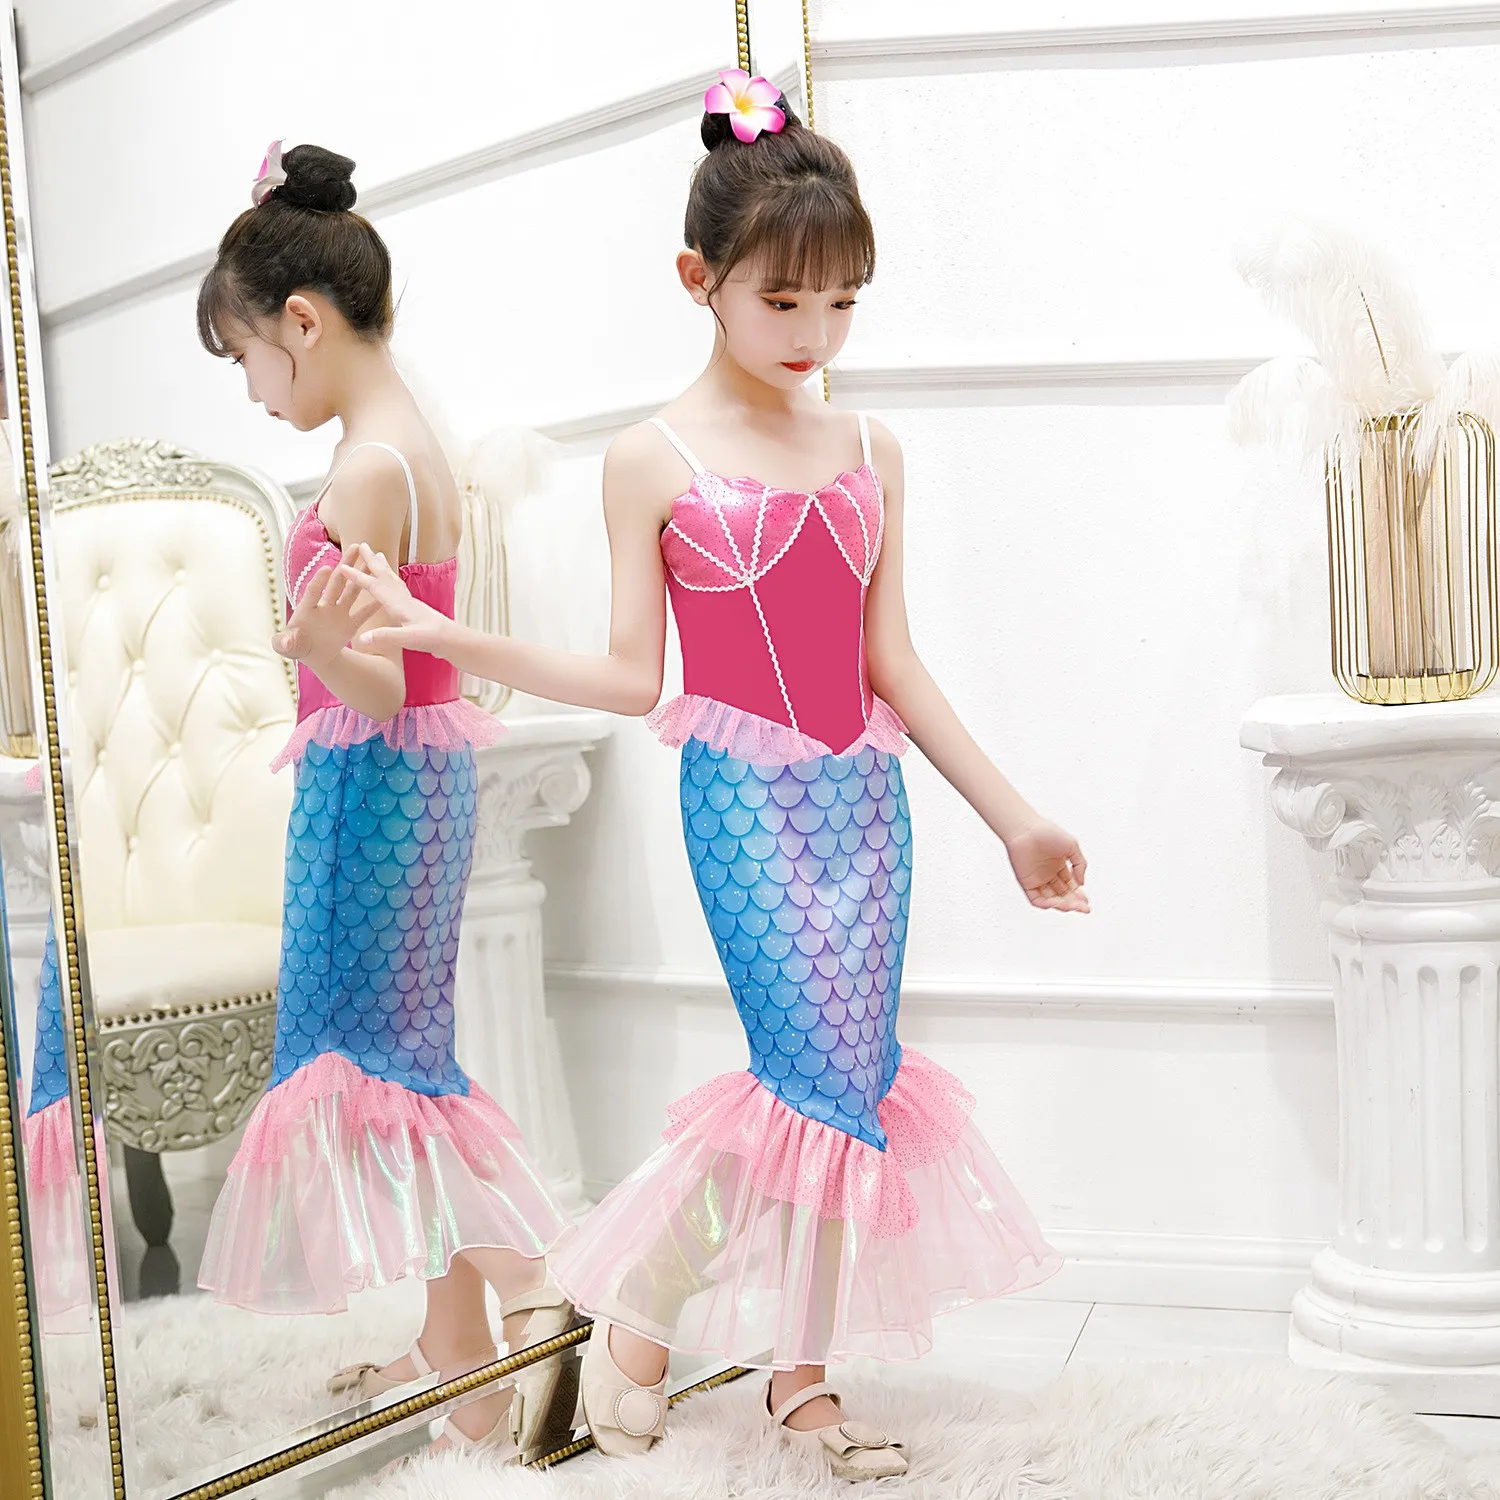 Fantasia de Sereia Infantil: 25 Fotos com Dicas, Exemplos e Muito Mais!   Little mermaid costume, Little mermaid costumes, Girls mermaid costume